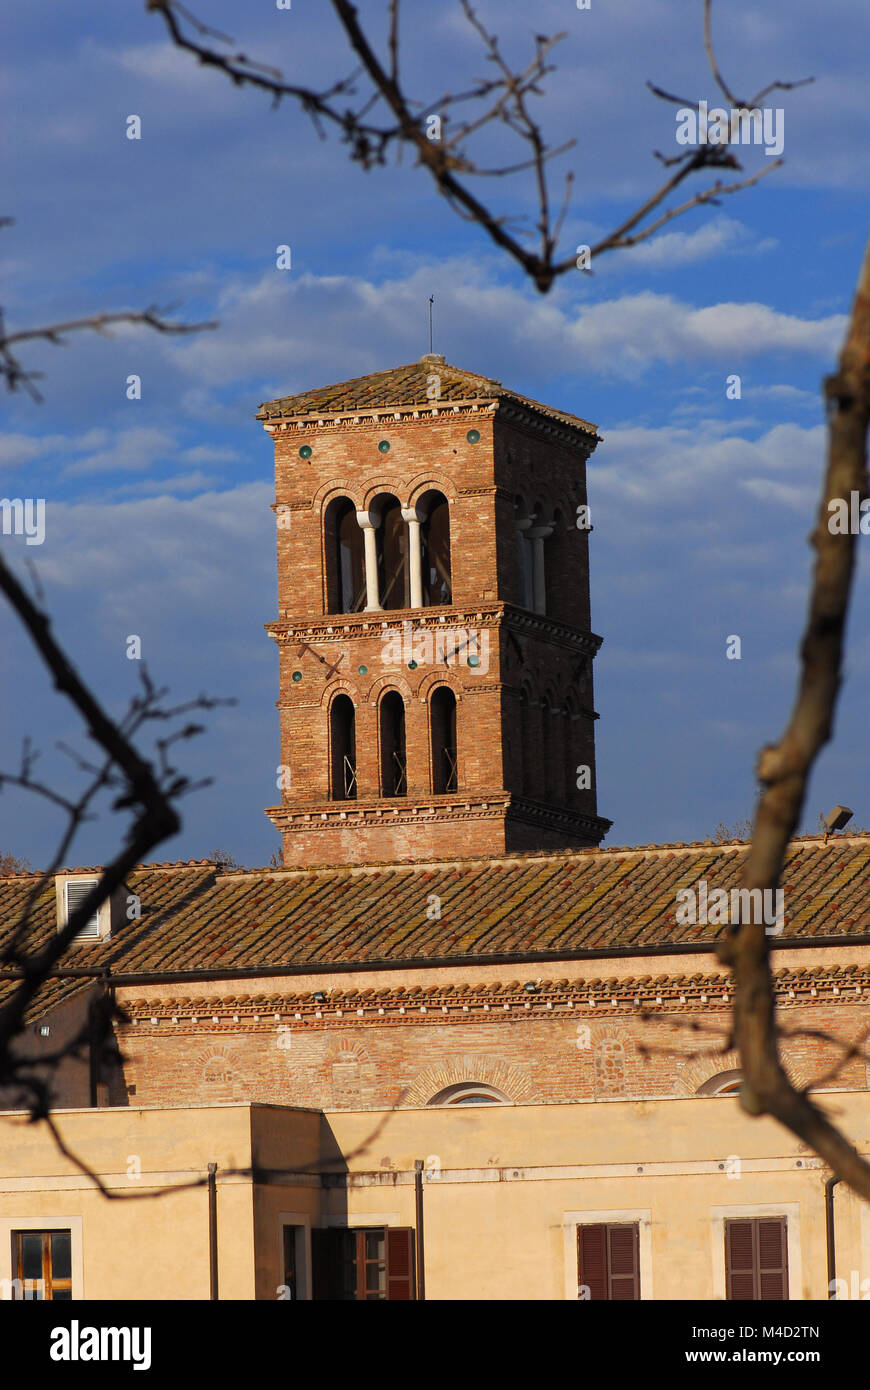 St. Bartholomäus auf der Insel mittelalterlichen Glockenturm im historischen Zentrum von Rom, durch Äste gesehen Stockfoto